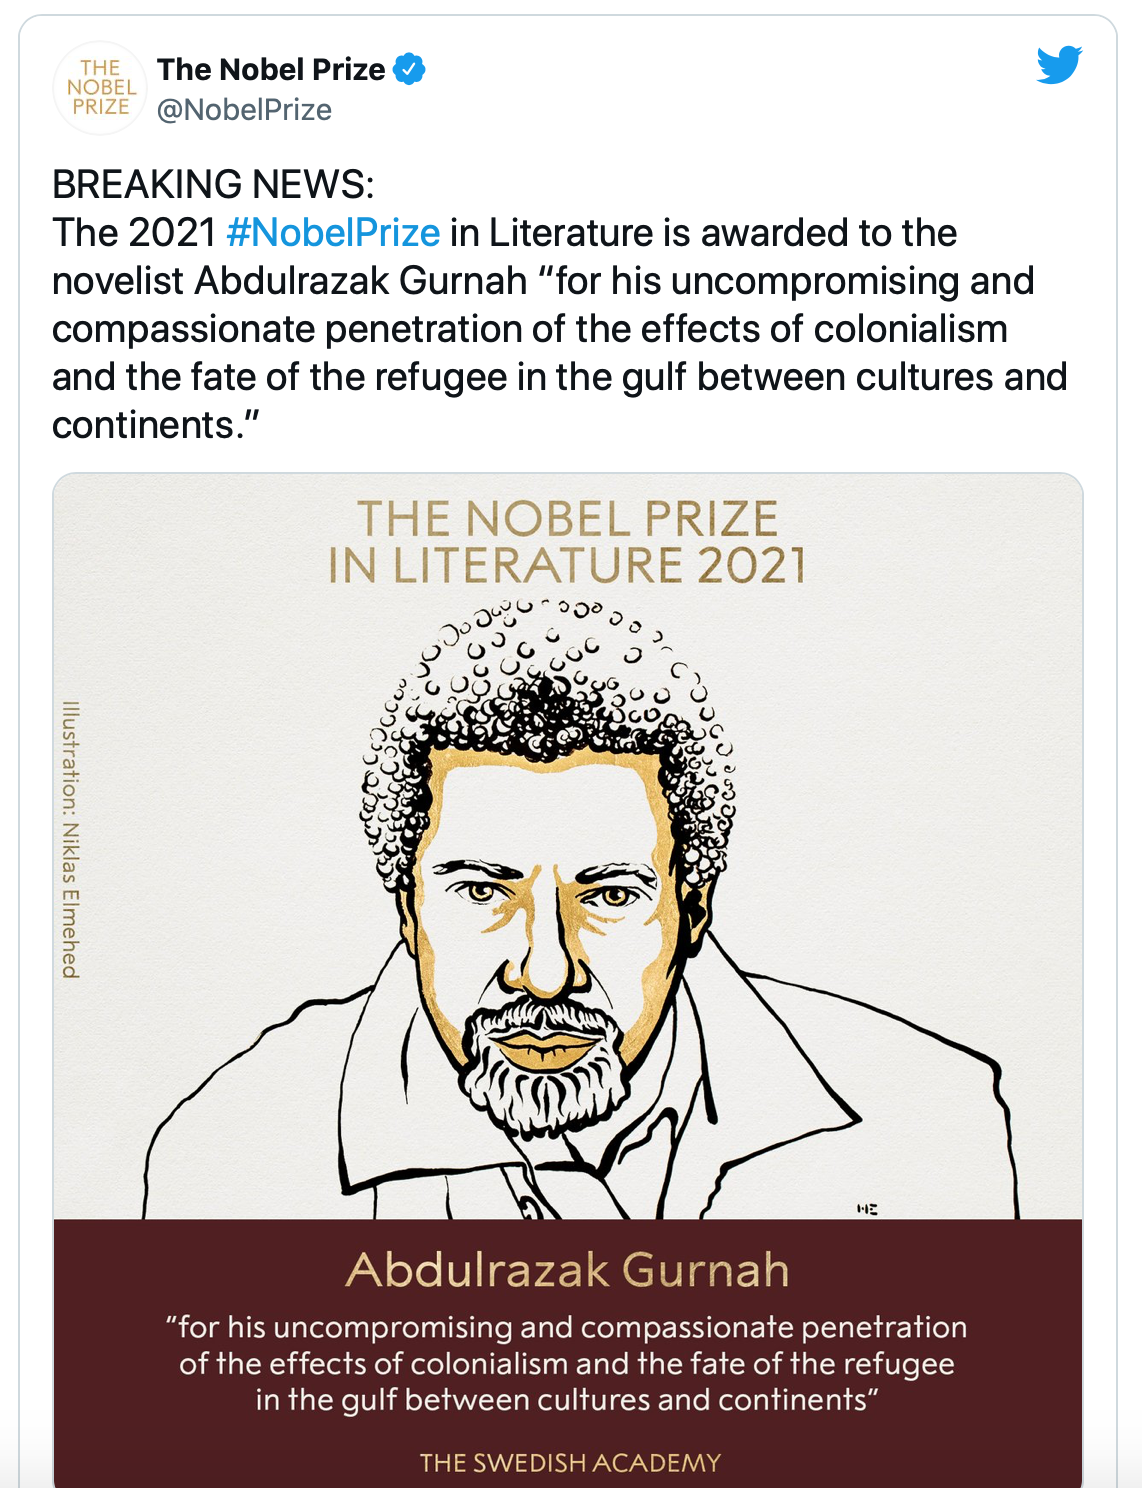 Танзанийский писатель Абдулразак Гурна получил Нобелевскую премию по литературе